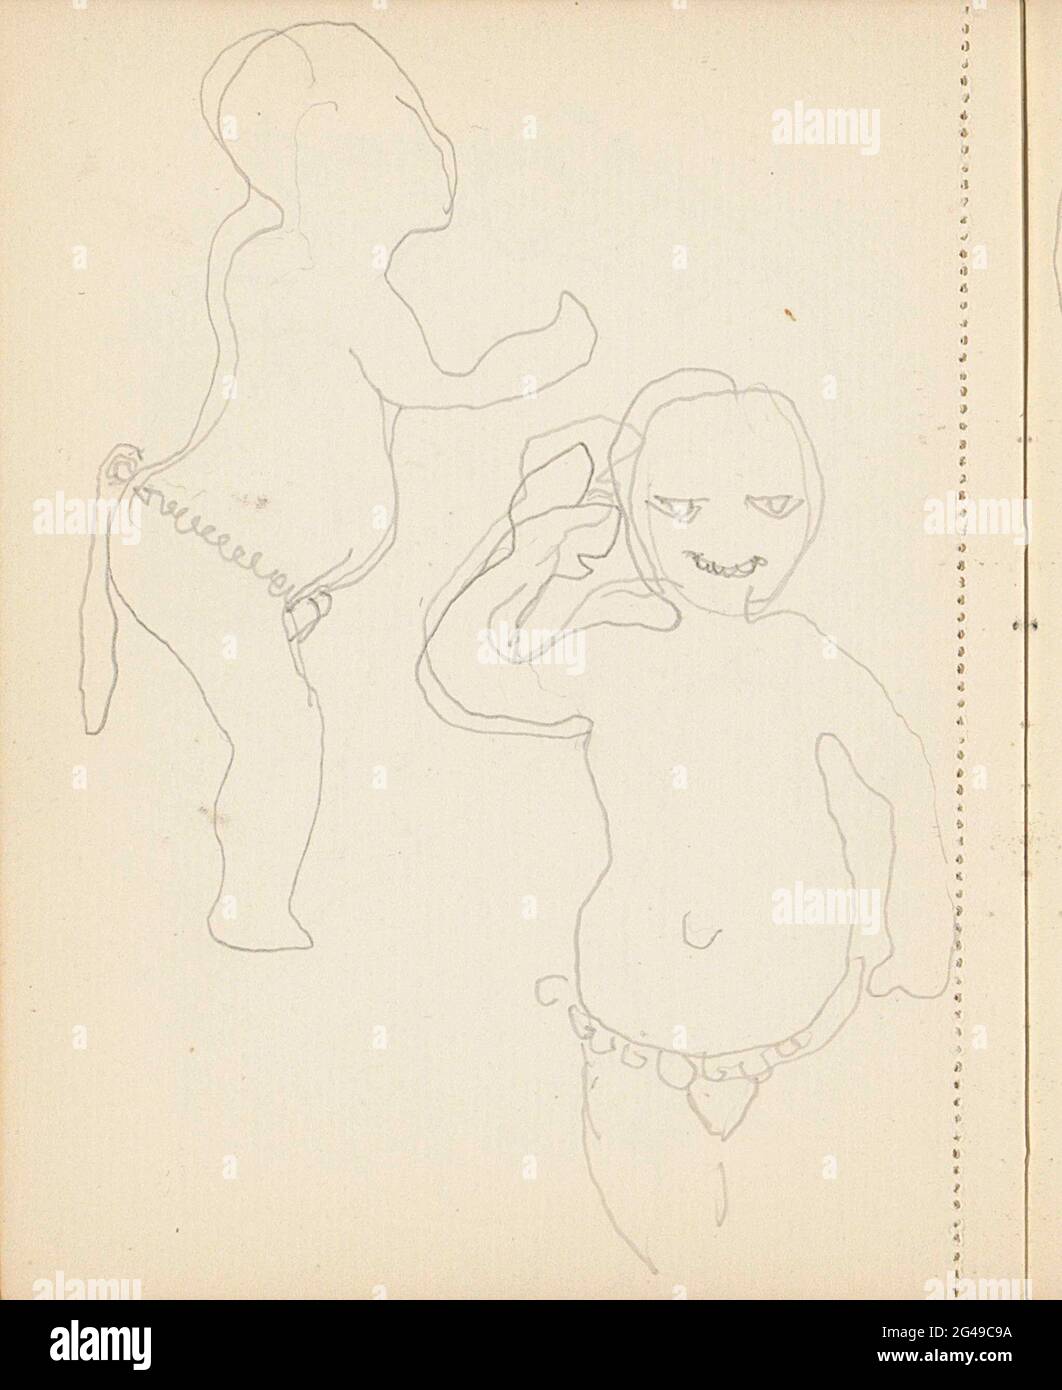 Enfant africain dans un chiffon. Feuille 29 Verso d'un carnet d'esquisses de 60 feuilles. Banque D'Images